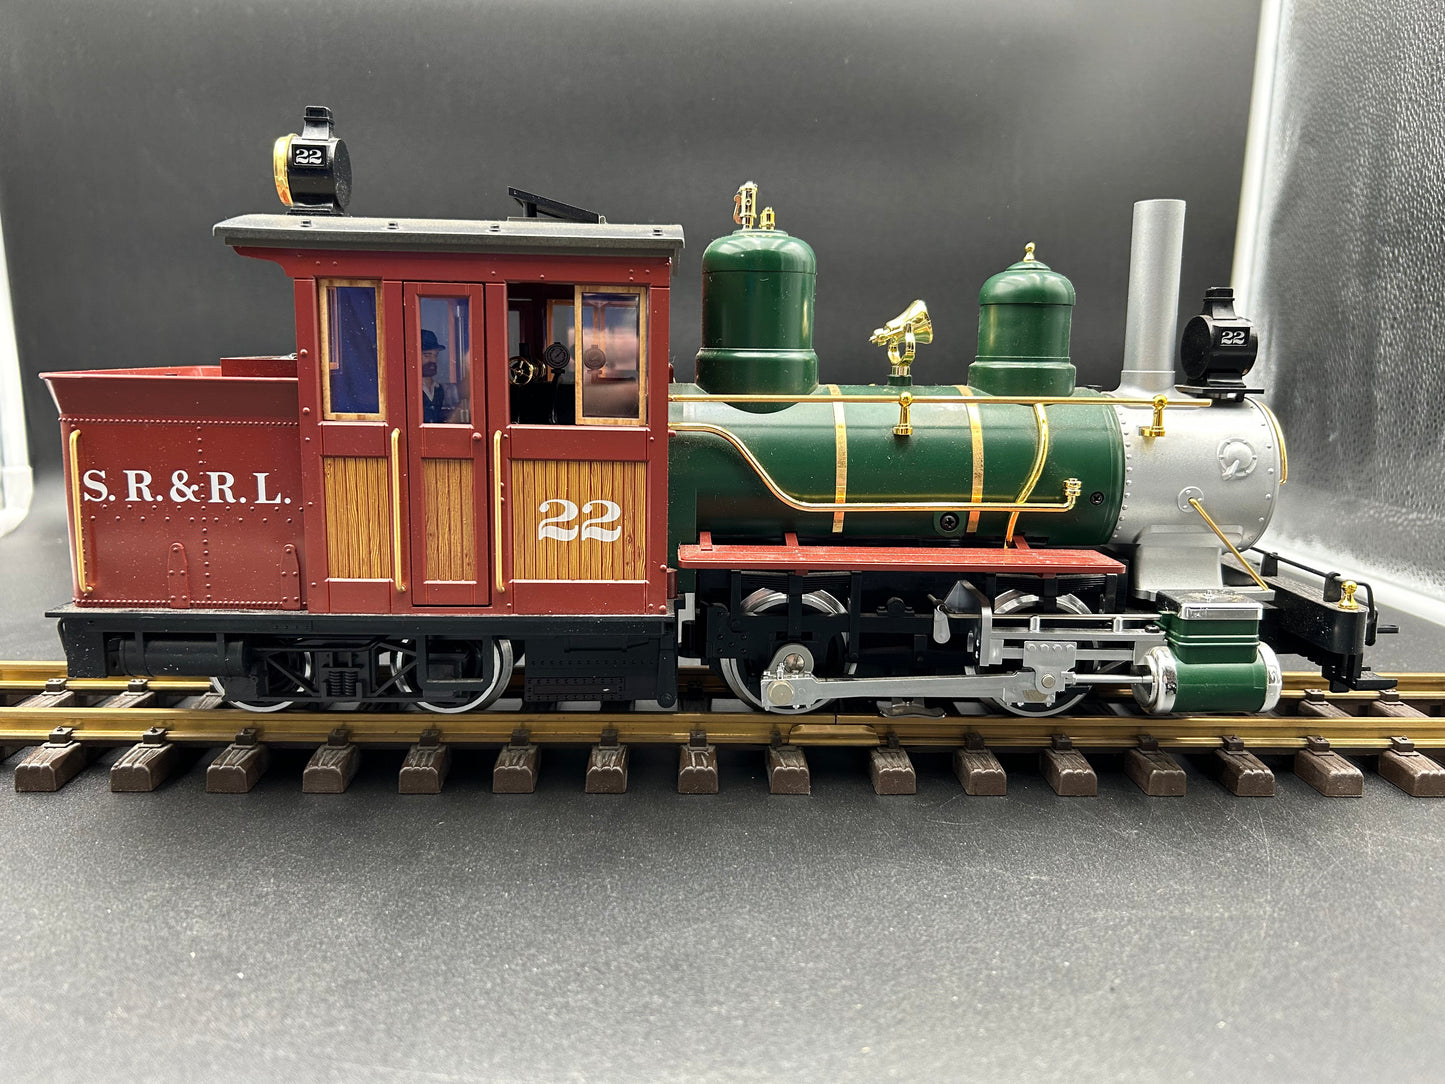 LGB 20251 SR&R.L. Steam Locomotive